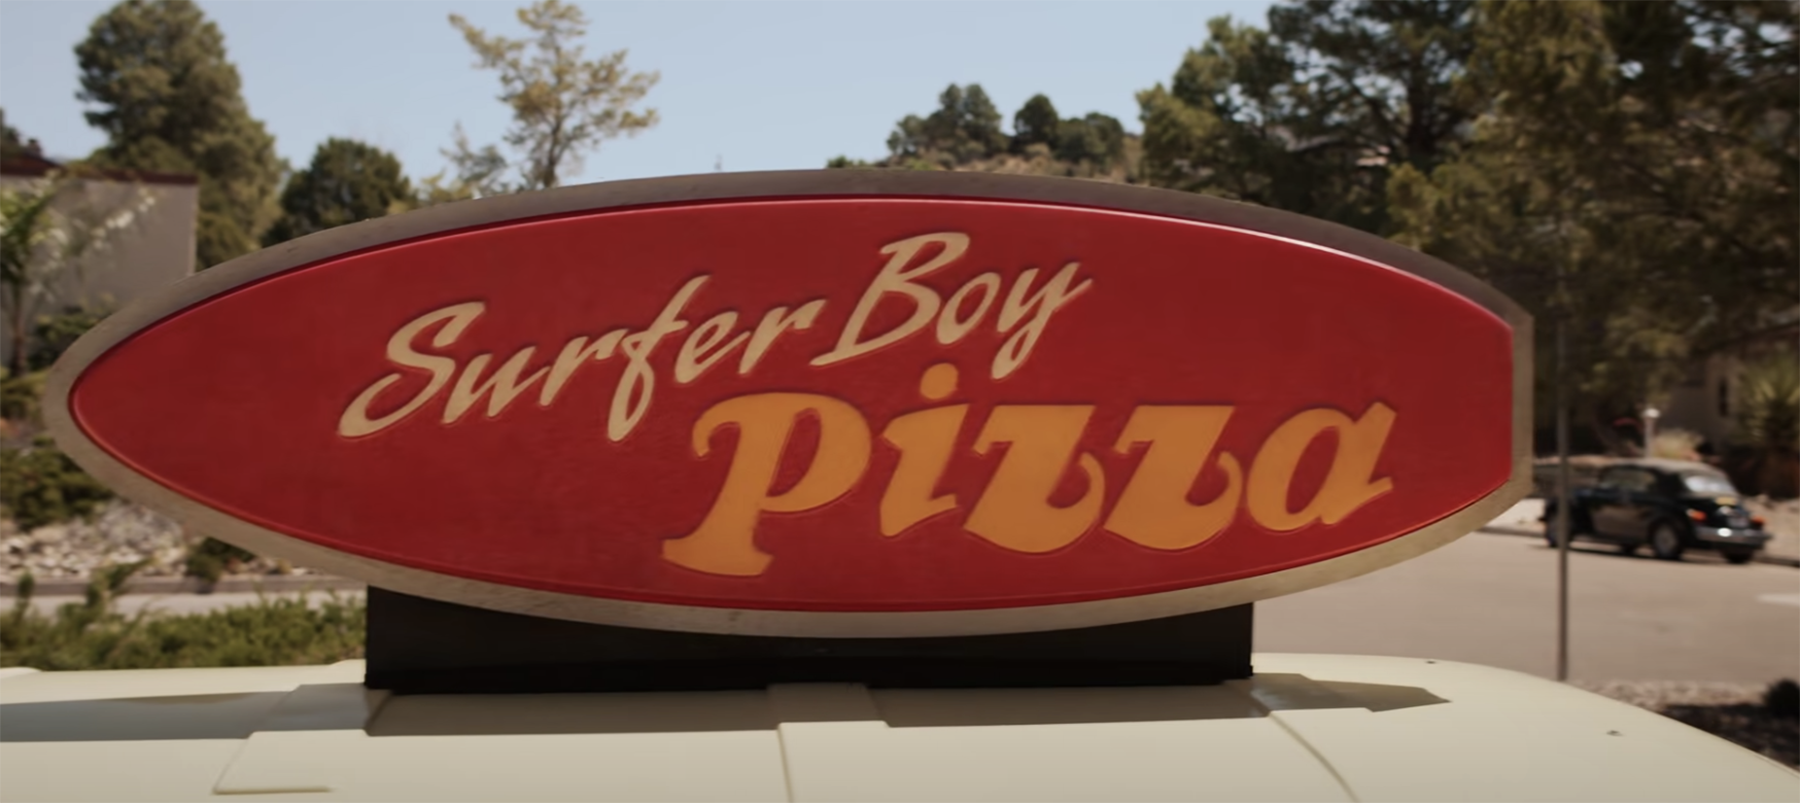 stranger-things-surfer-bro-pizza